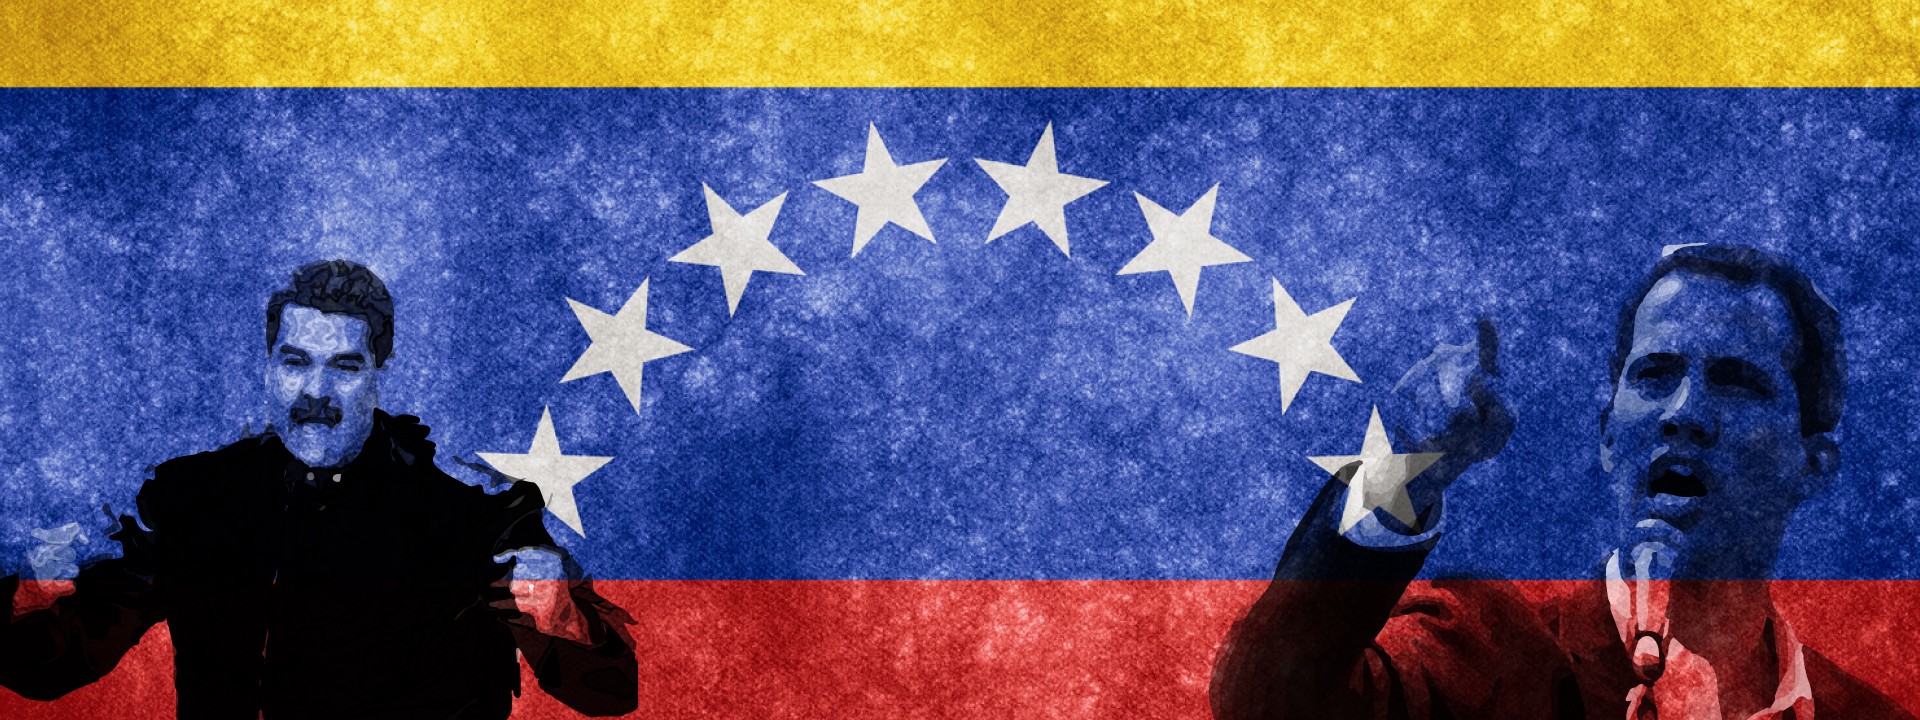 Protests Go Viral in Venezuela